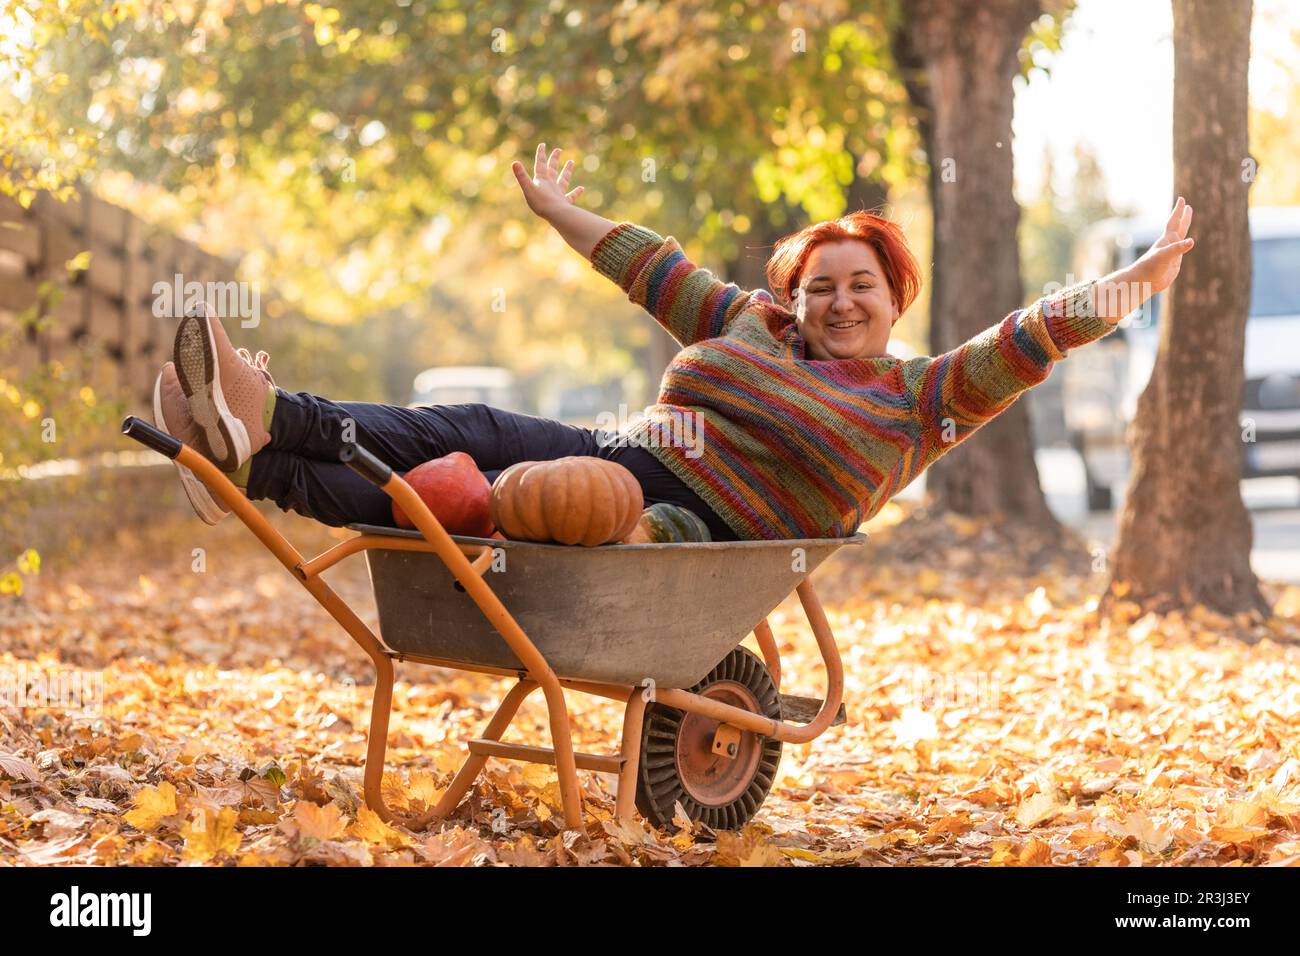 Une femme s'amuse, couchée dans la brouette du jardin avec des citrouilles Banque D'Images